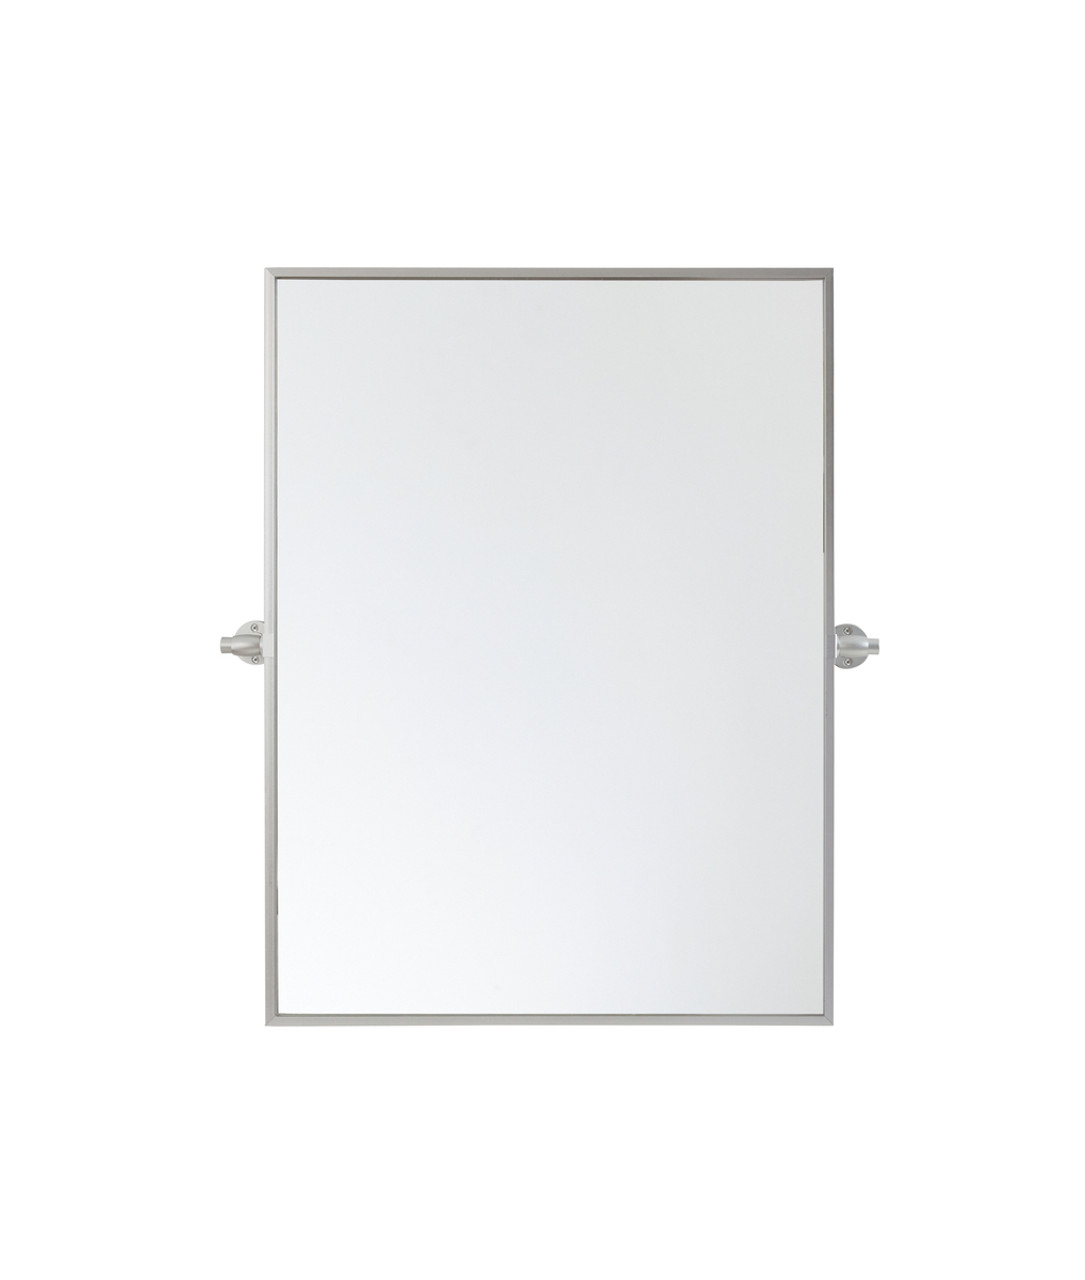 Elegant Décor MR6E2432SIL Rectangle pivot mirror 24x32 inch in silver